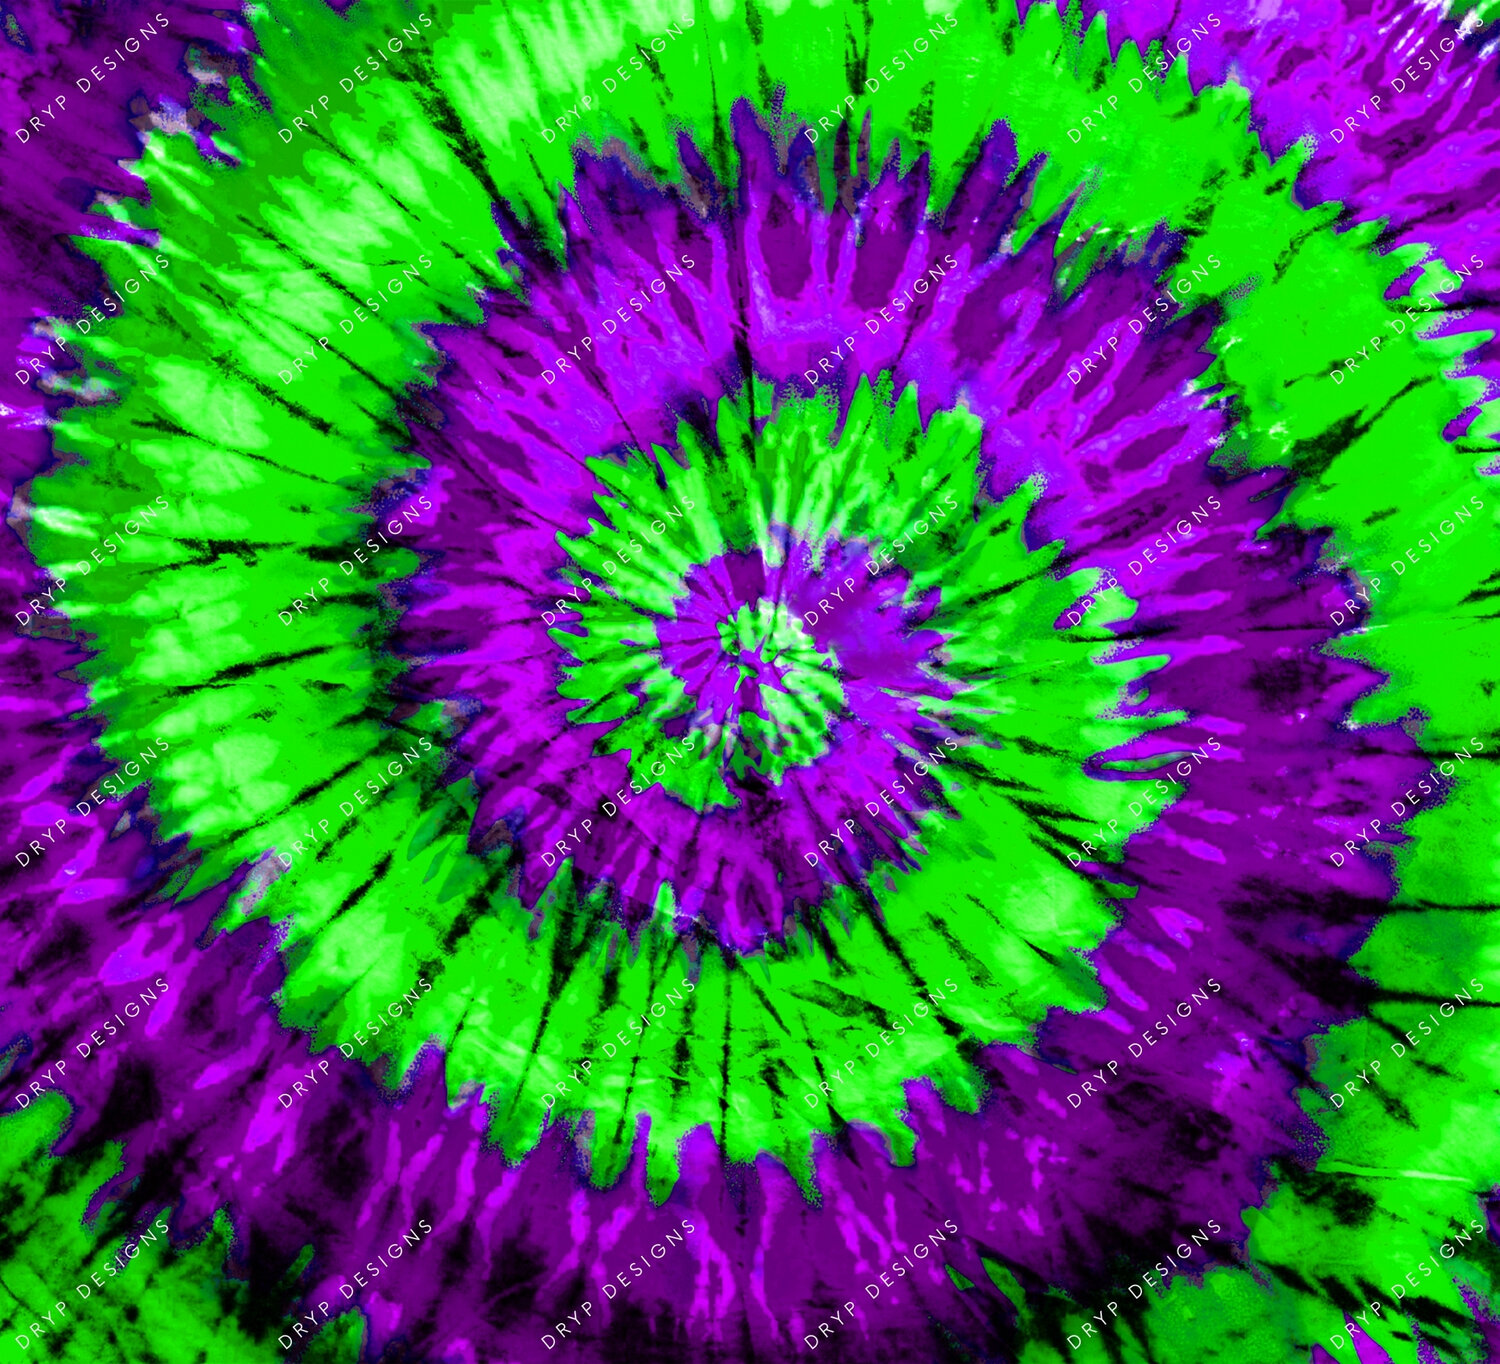 Neon Green + Purple Tie-Dye Background: Nhấn vào hình ảnh này để xem nền mã sơn tông màu tím xanh sặc sỡ. Tạo động lực cho ngày mới với bức hình nền sắc màu này.